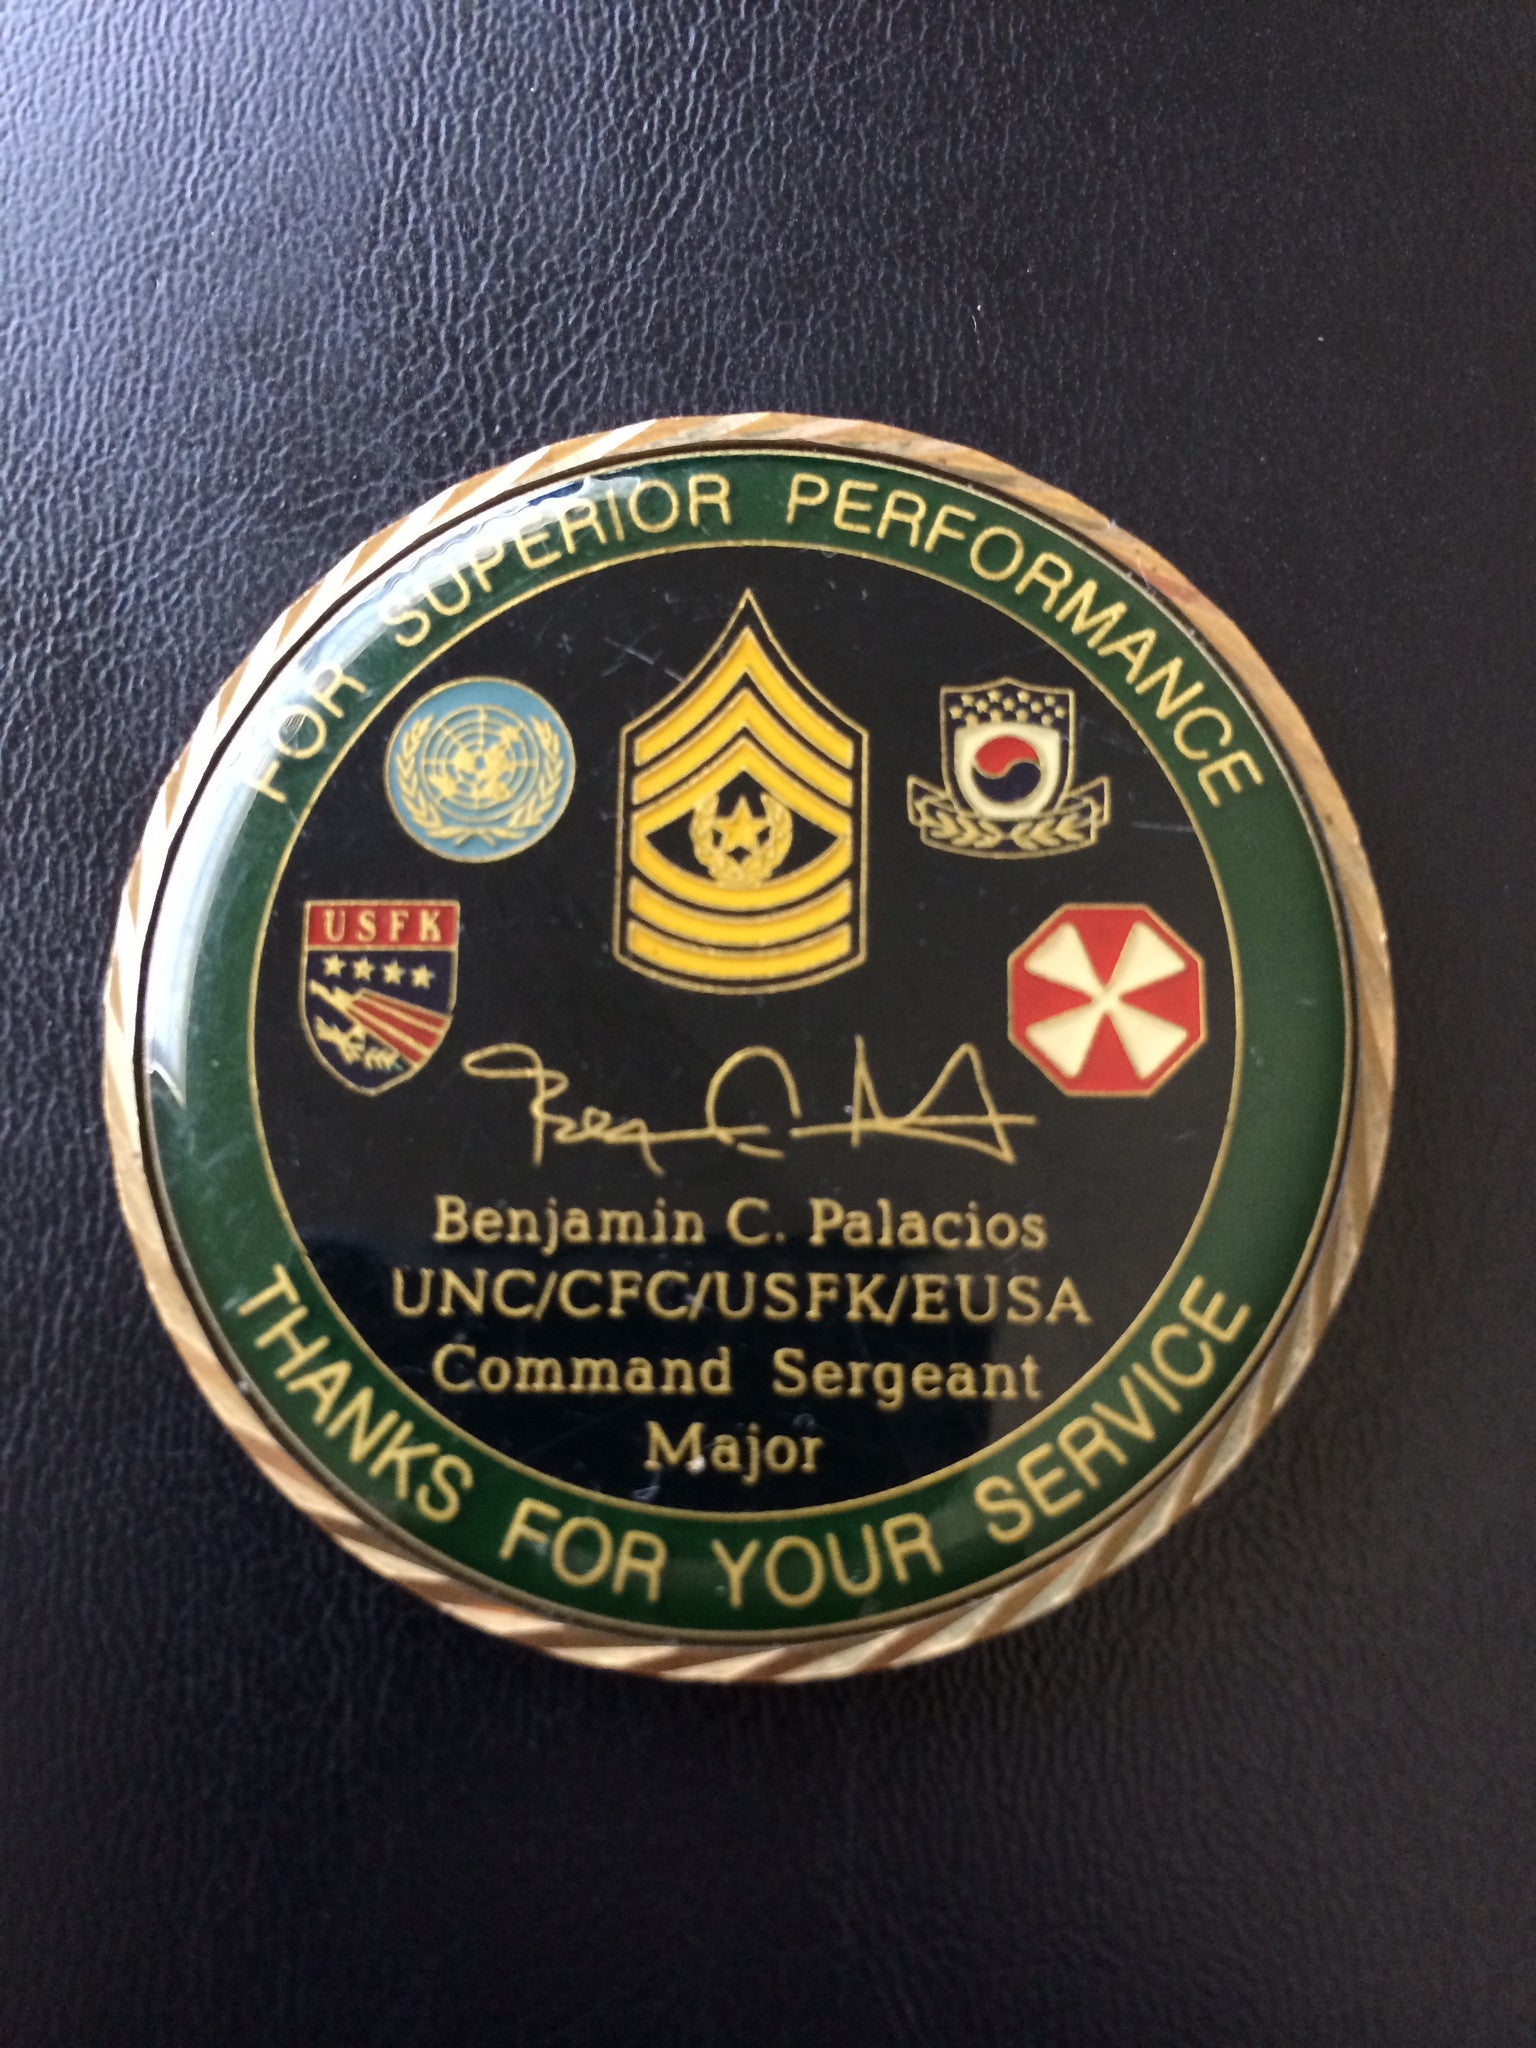 UNC/CFC/USFK/EUSA Command Sergeant Major CSM Benjamin Palacios